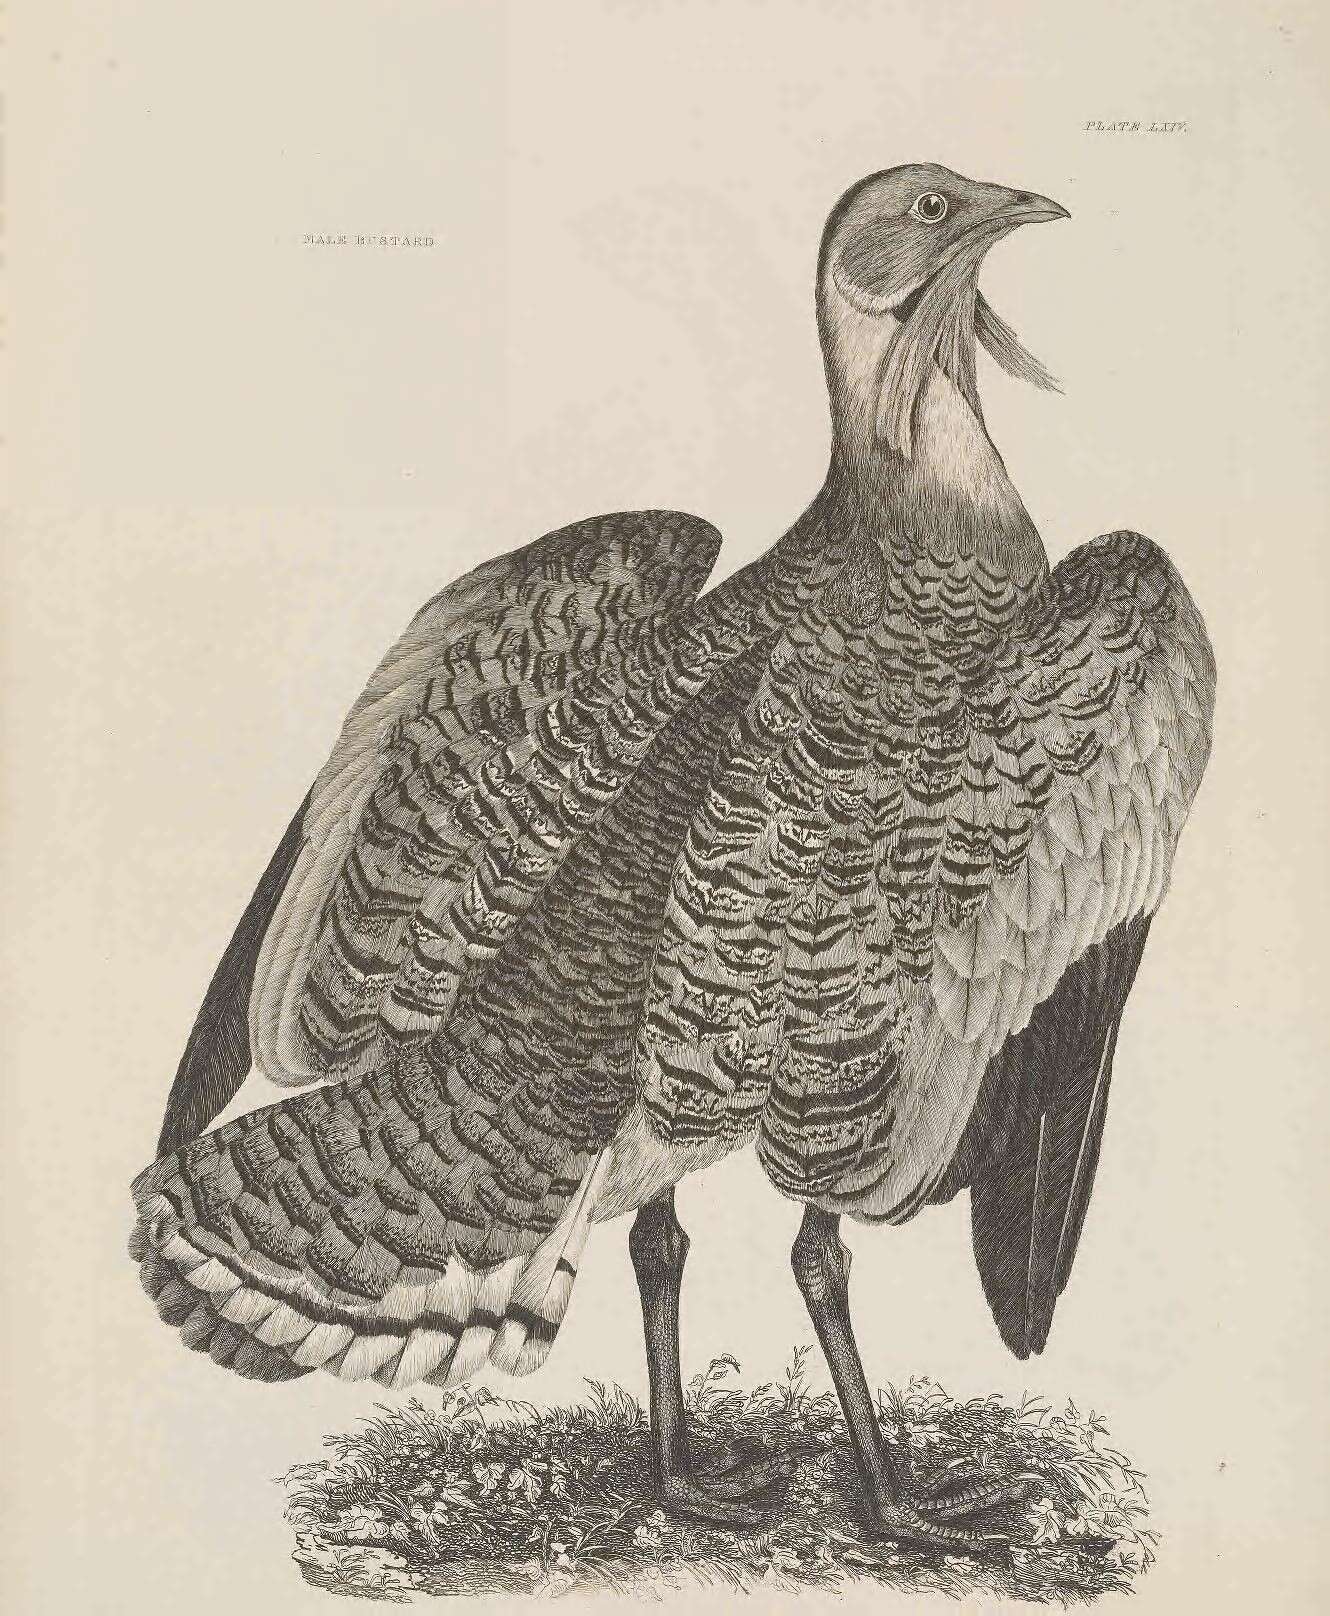 Image of Otis Linnaeus 1758